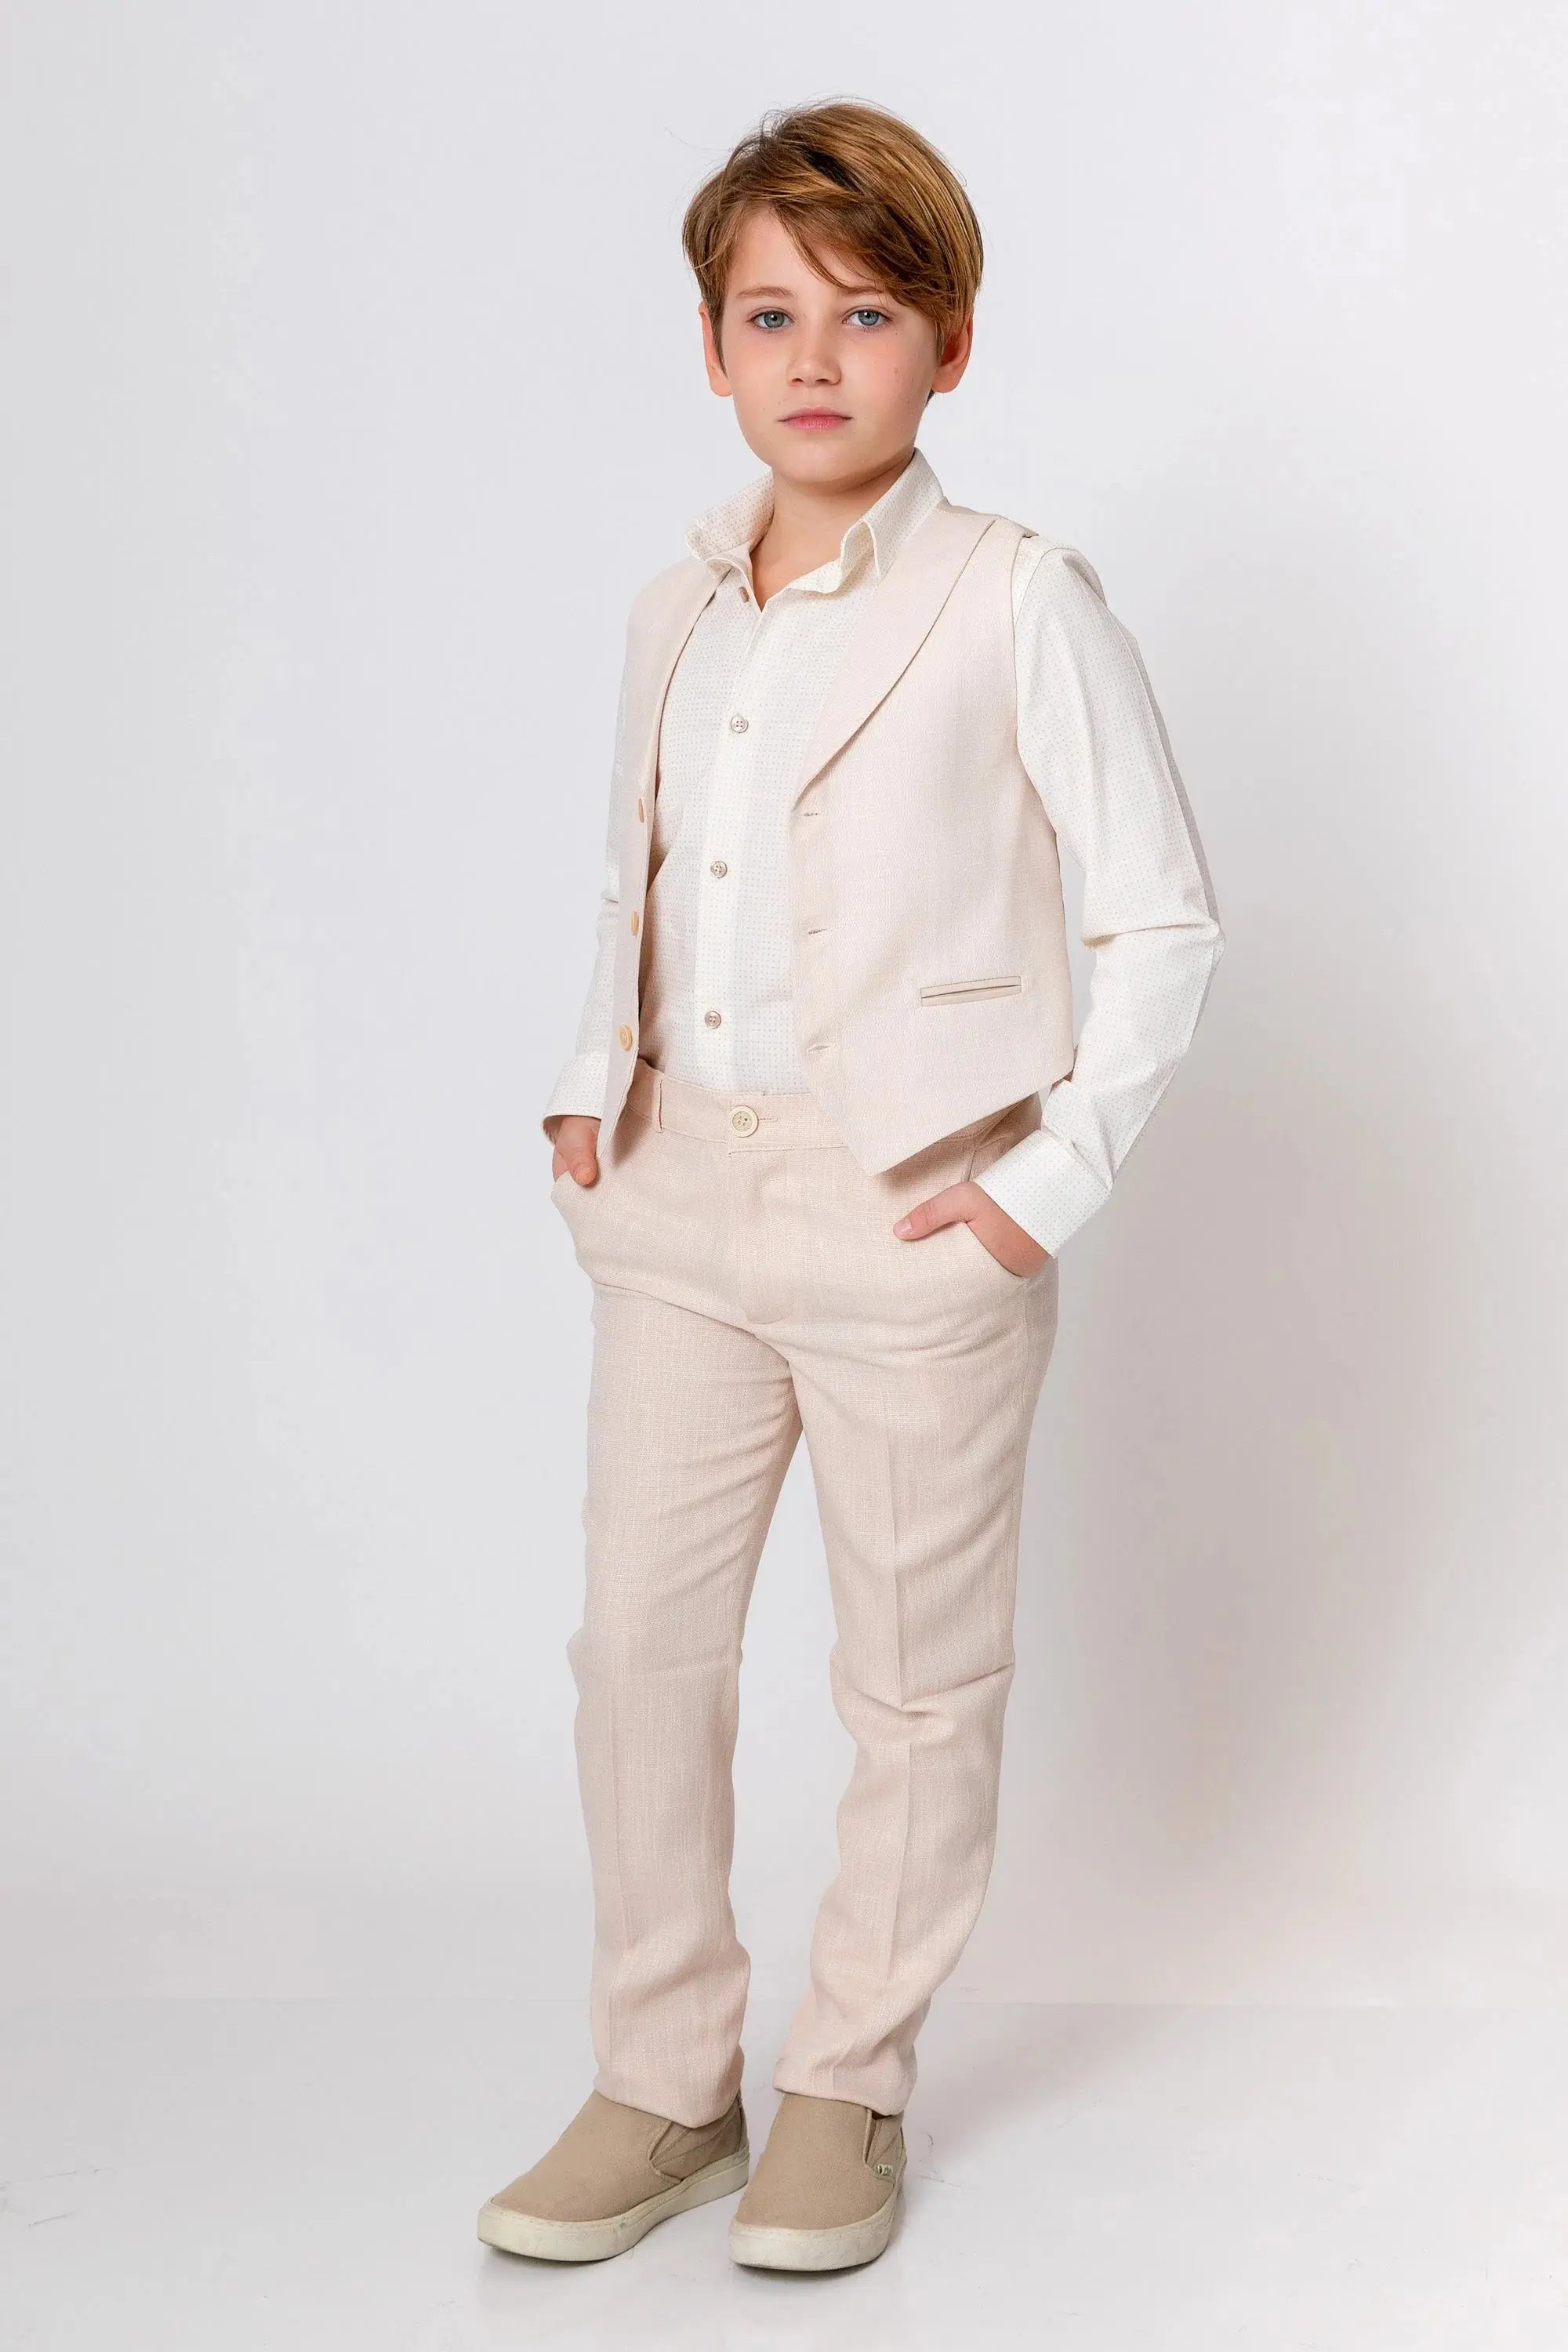 Joseph Abboud Boys Suit Separates Pants | Hamilton Place